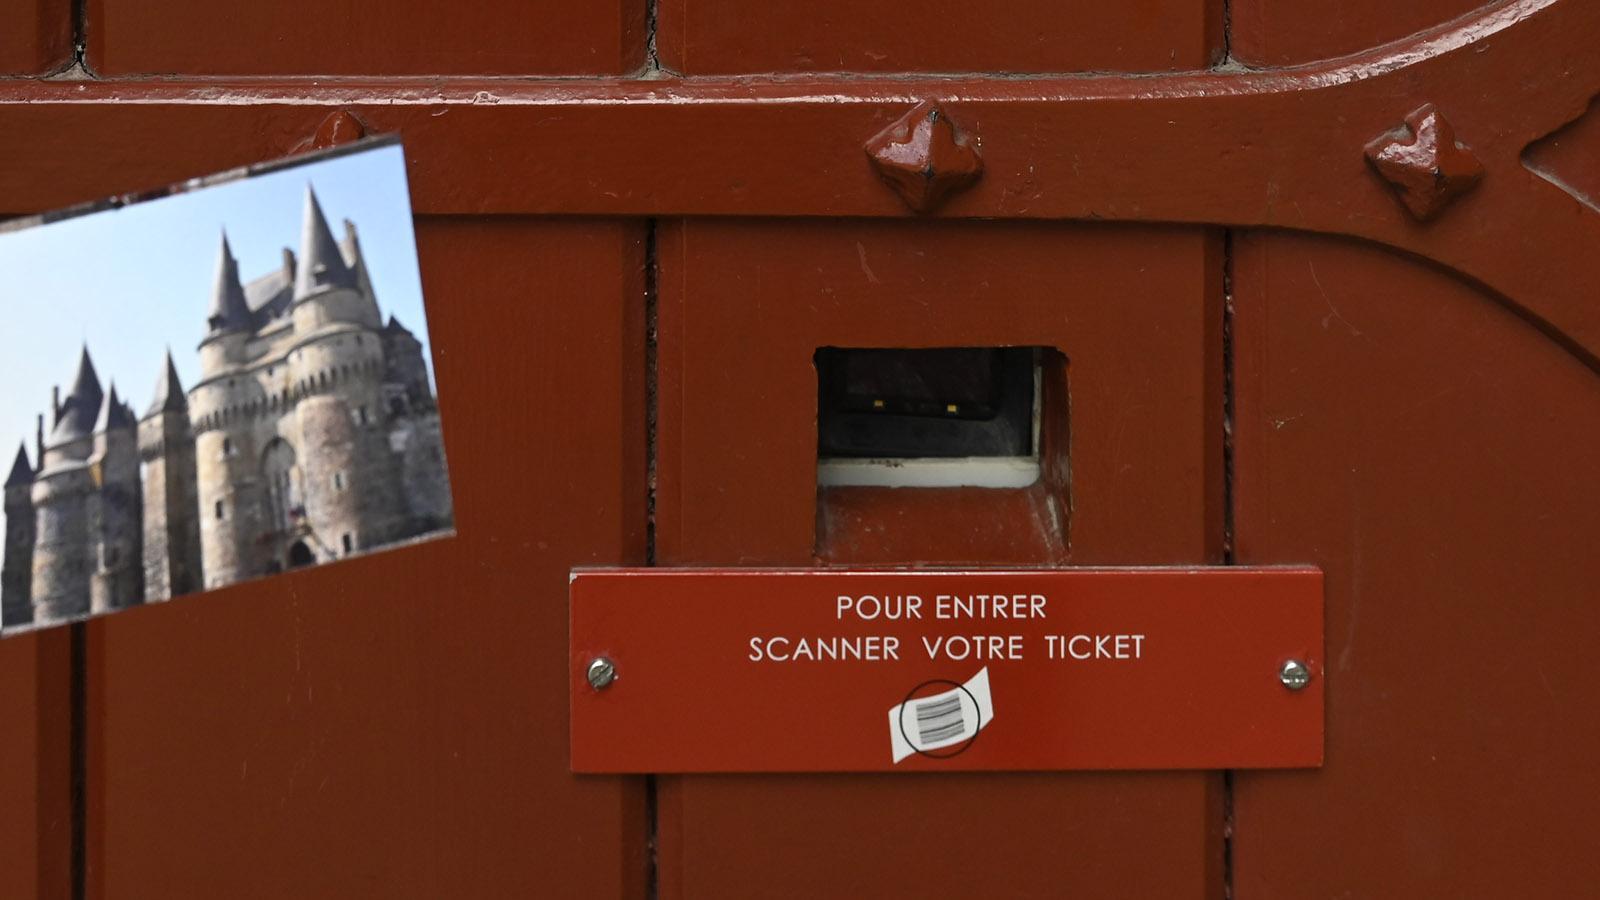 Um in das Schlossmuseum zu gelangen, müsst ihr euer Ticket scannen. Foto: Hilke Maunder